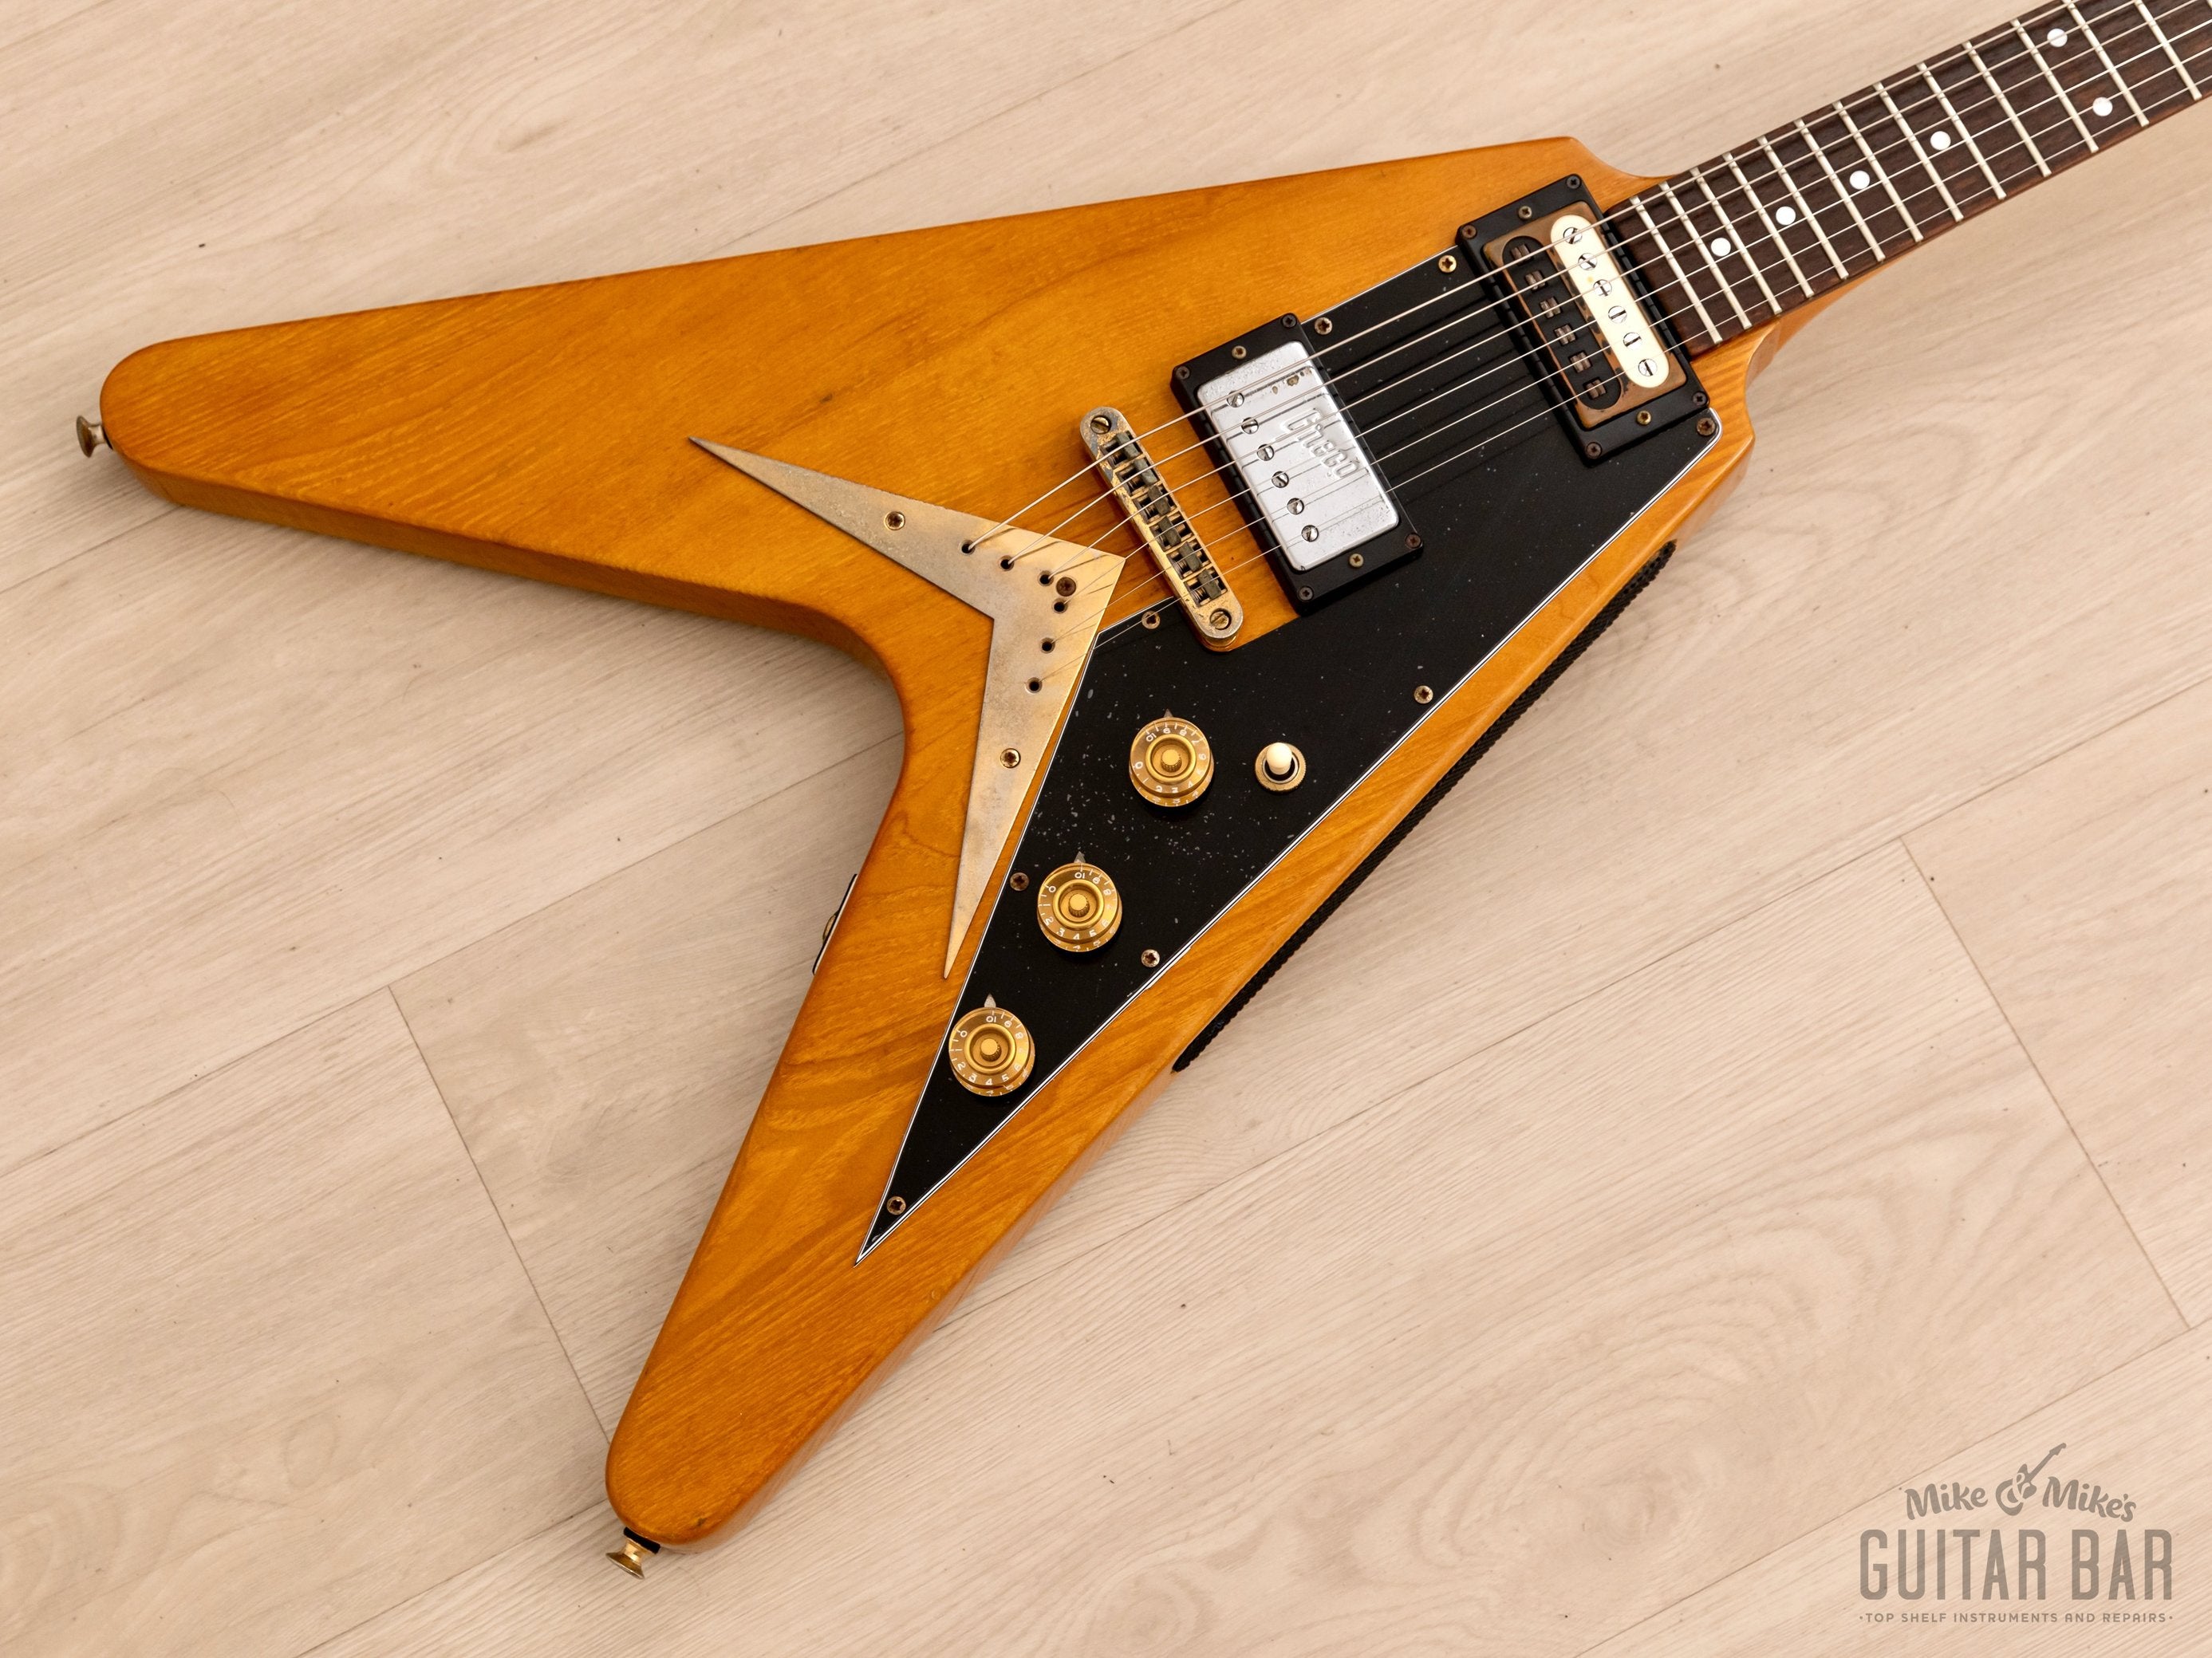 1978 Greco FV-900 Flying V Vintage Guitar Natural w/ Case, Japan Fujigen, Rocket Roll Sr